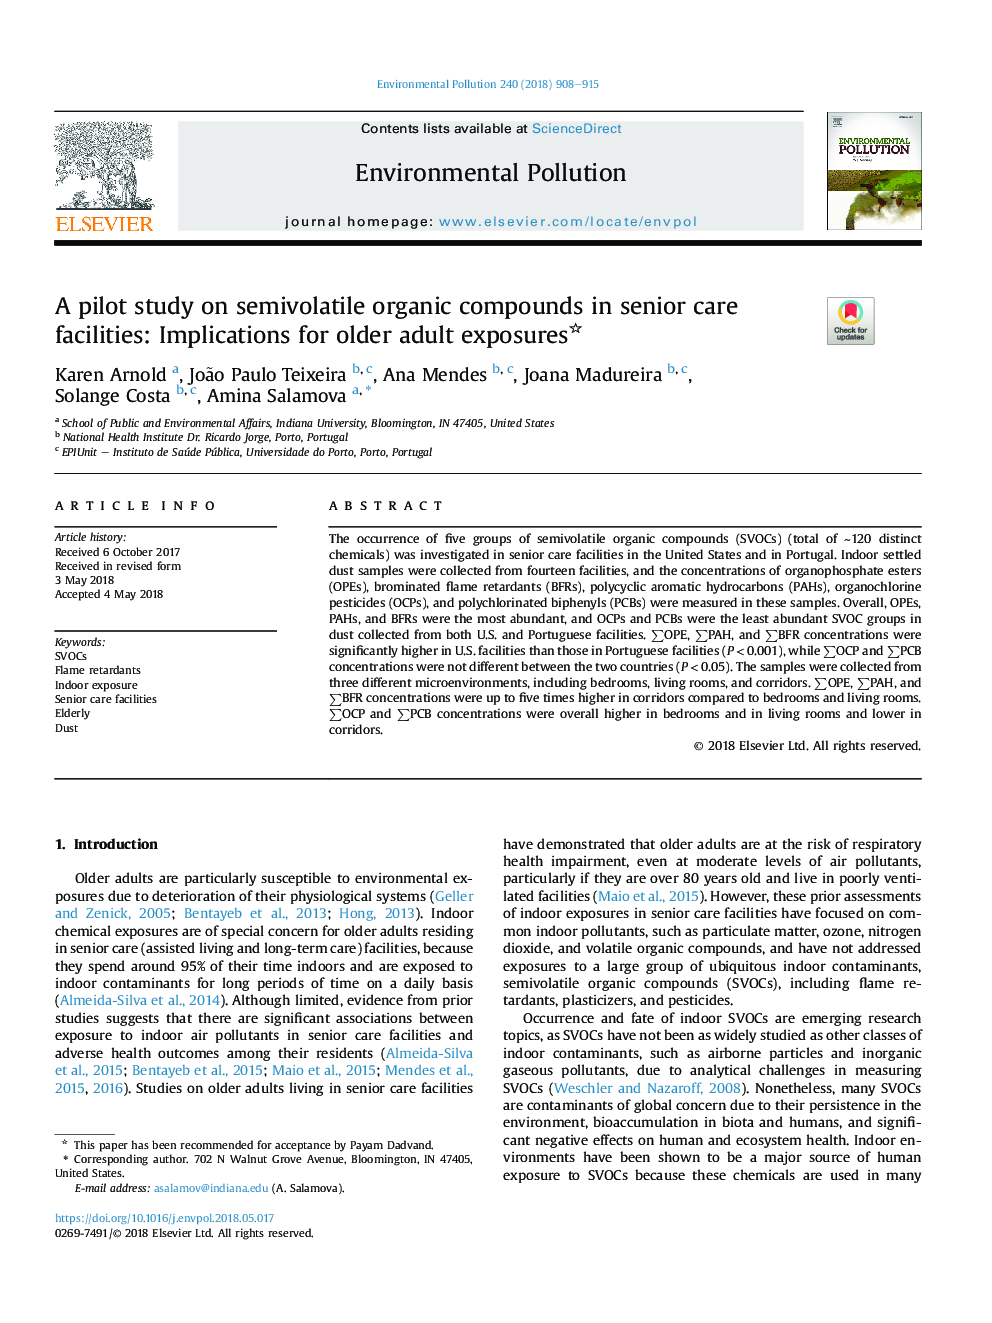 یک مطالعه آزمایشی در مورد ترکیبات ارگانیک نیمه جامد در مراکز مراقبت های ویژه: پیامدهای بالینی مواجهه با بزرگسالان 